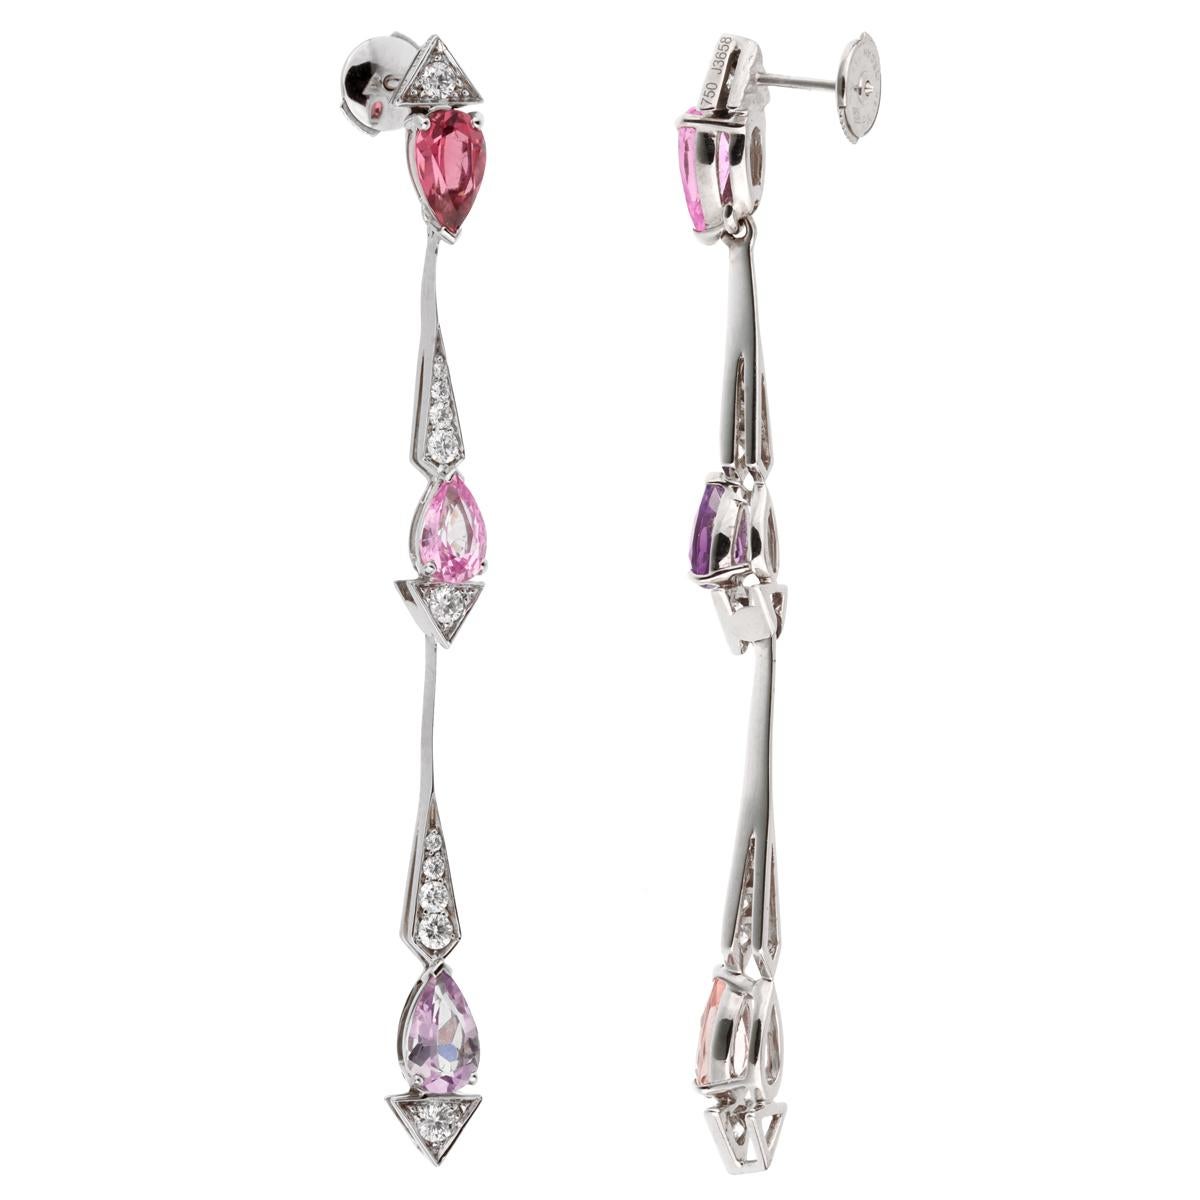 Ein schickes Set von Christian Dior Diamant-Ohrringen mit rosa Saphiren, Amethyst und Turmalin, gefasst in 18 Karat Weißgold. Die Ohrringe messen 2,75